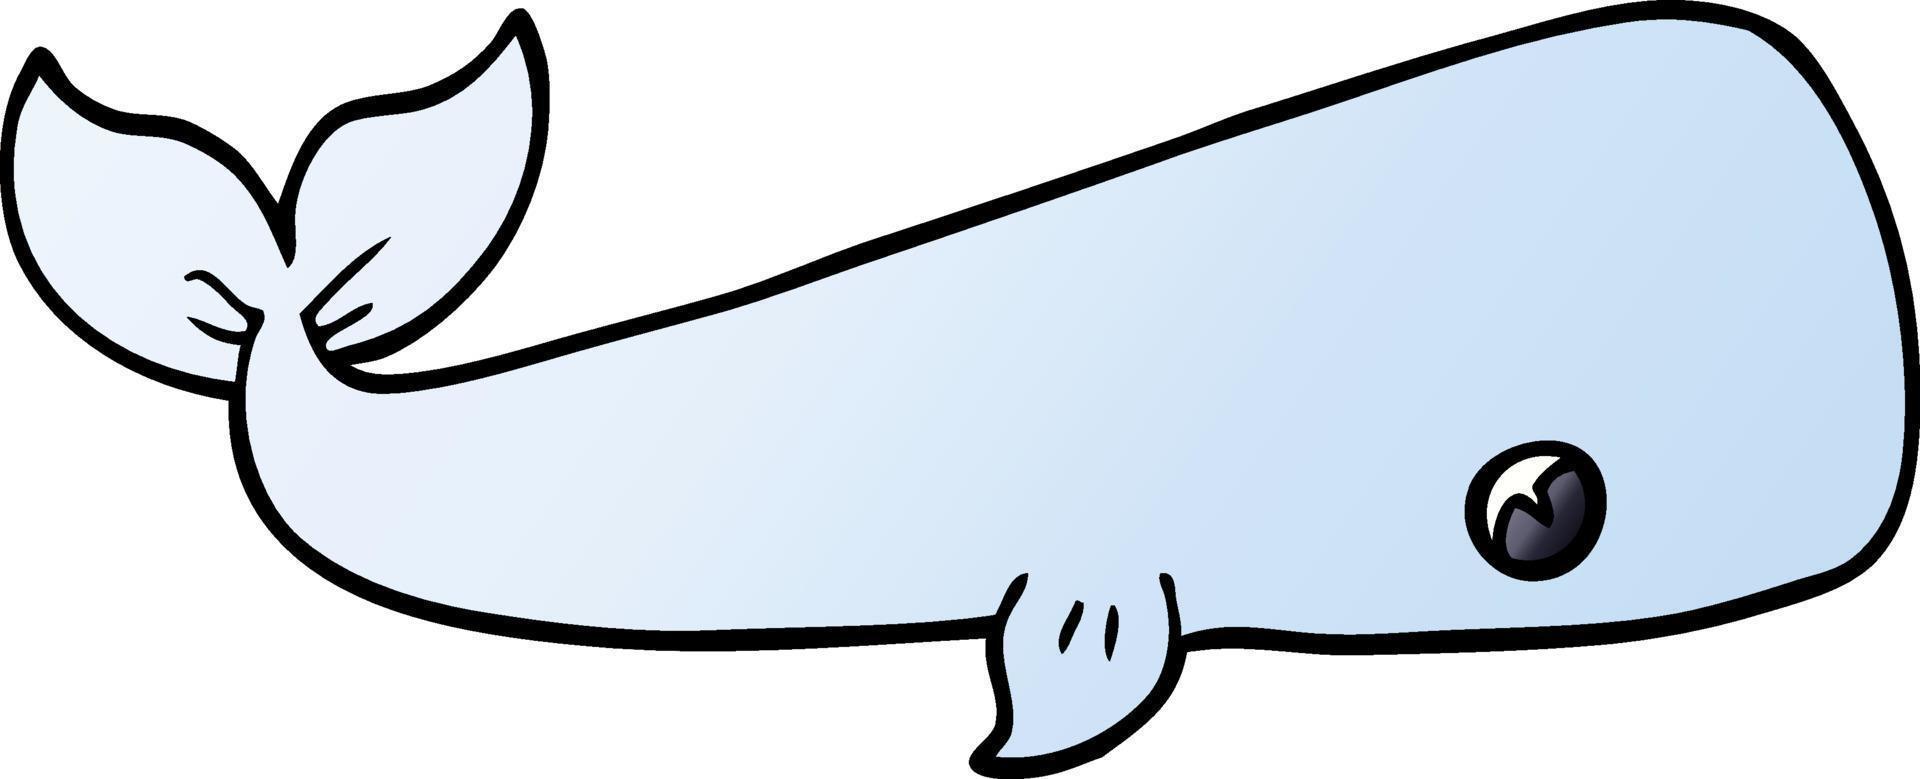 baleia do mar doodle dos desenhos animados vetor